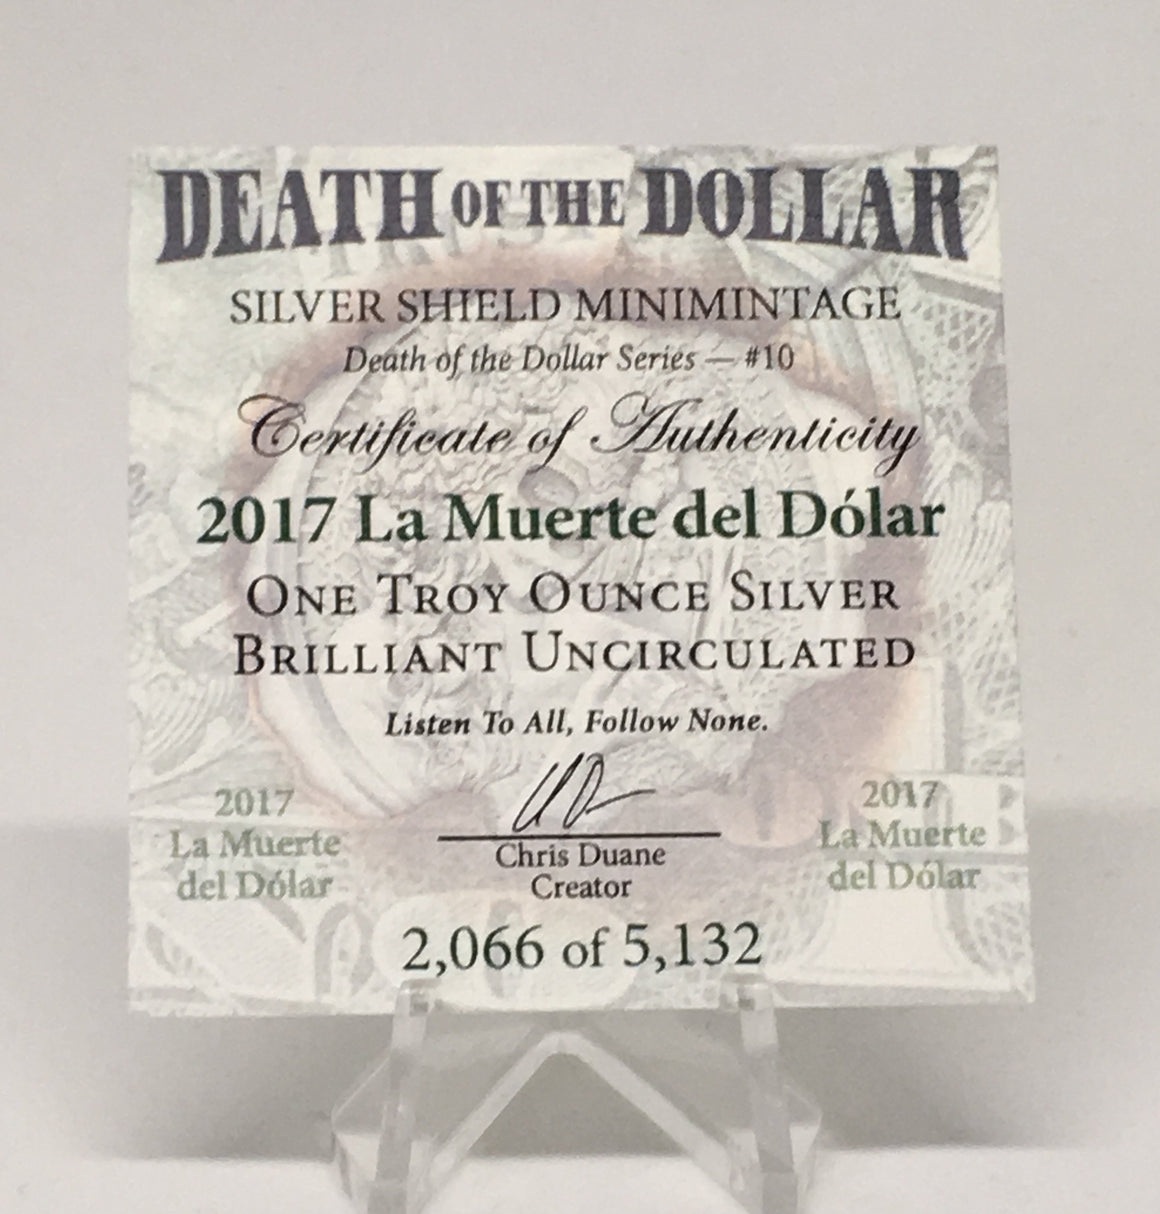 La Muerte del Dolar by Silver Shield, Mini Mintage - BU 1 oz .999 Silver Round